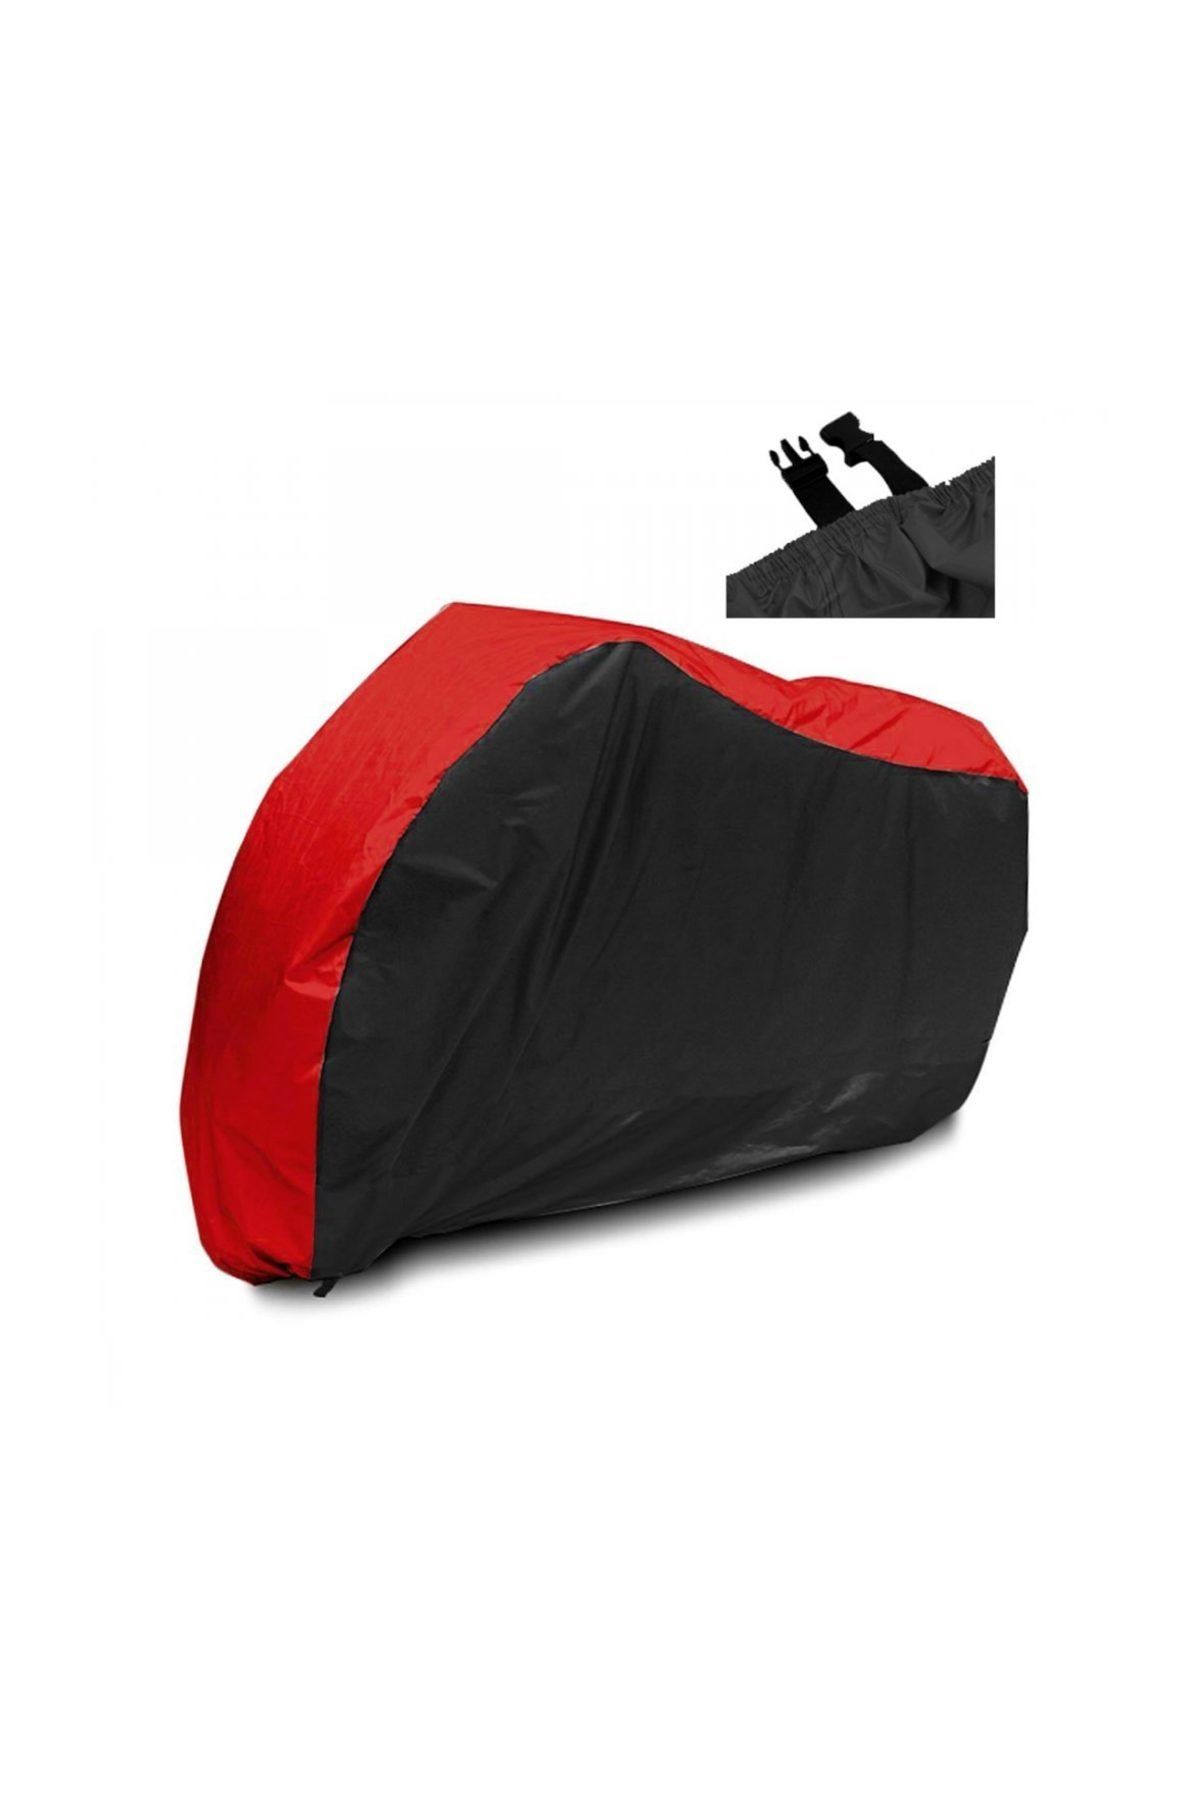 AutoEN MotoEN Daelim S3 Advance 250 Branda ARKA ÇANTA UYUMLU Motosiklet Brandası  Siyah-Kırmızı